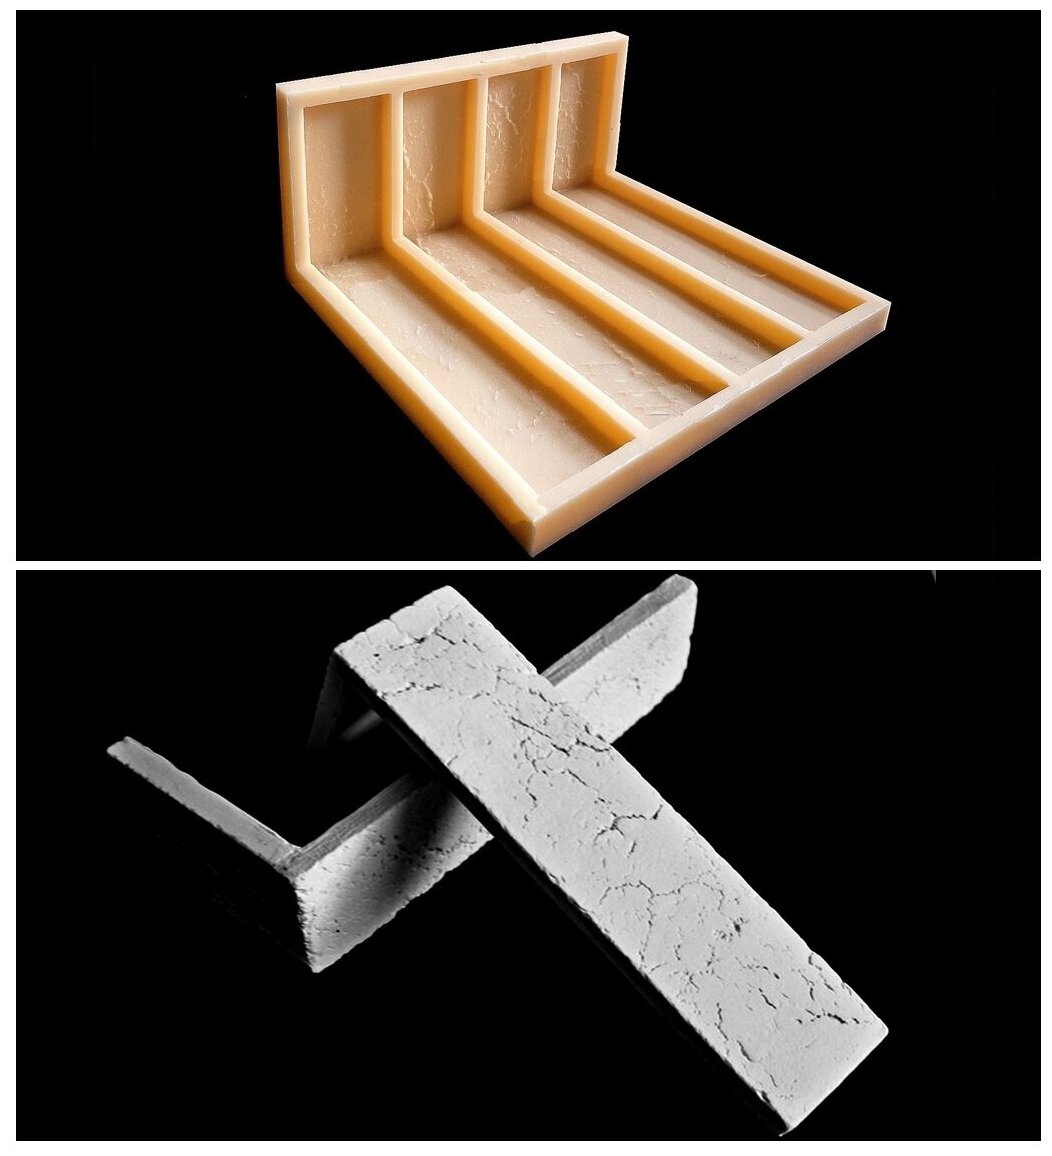 Кирпич Римский ZIKAM - угловая монолитная эластичная форма. Силиконовая форма для гипса. Полиуретановая форма для бетона.